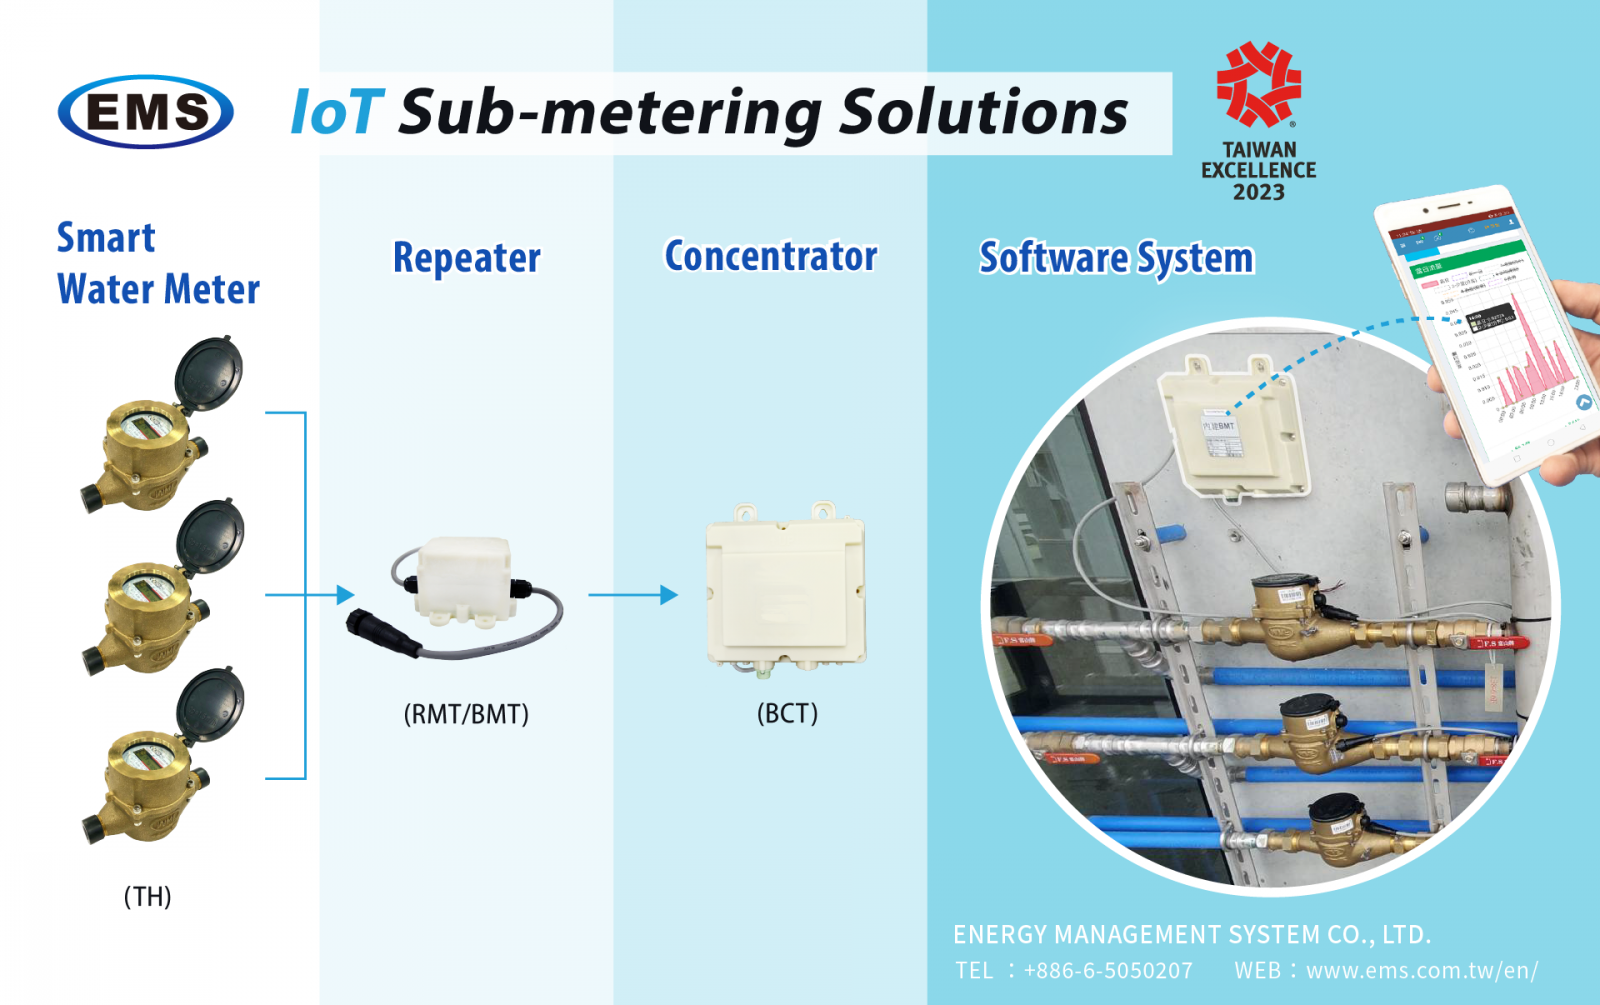 smart water meter, AMR water meter, sub-metering, IoT water meter, smart household